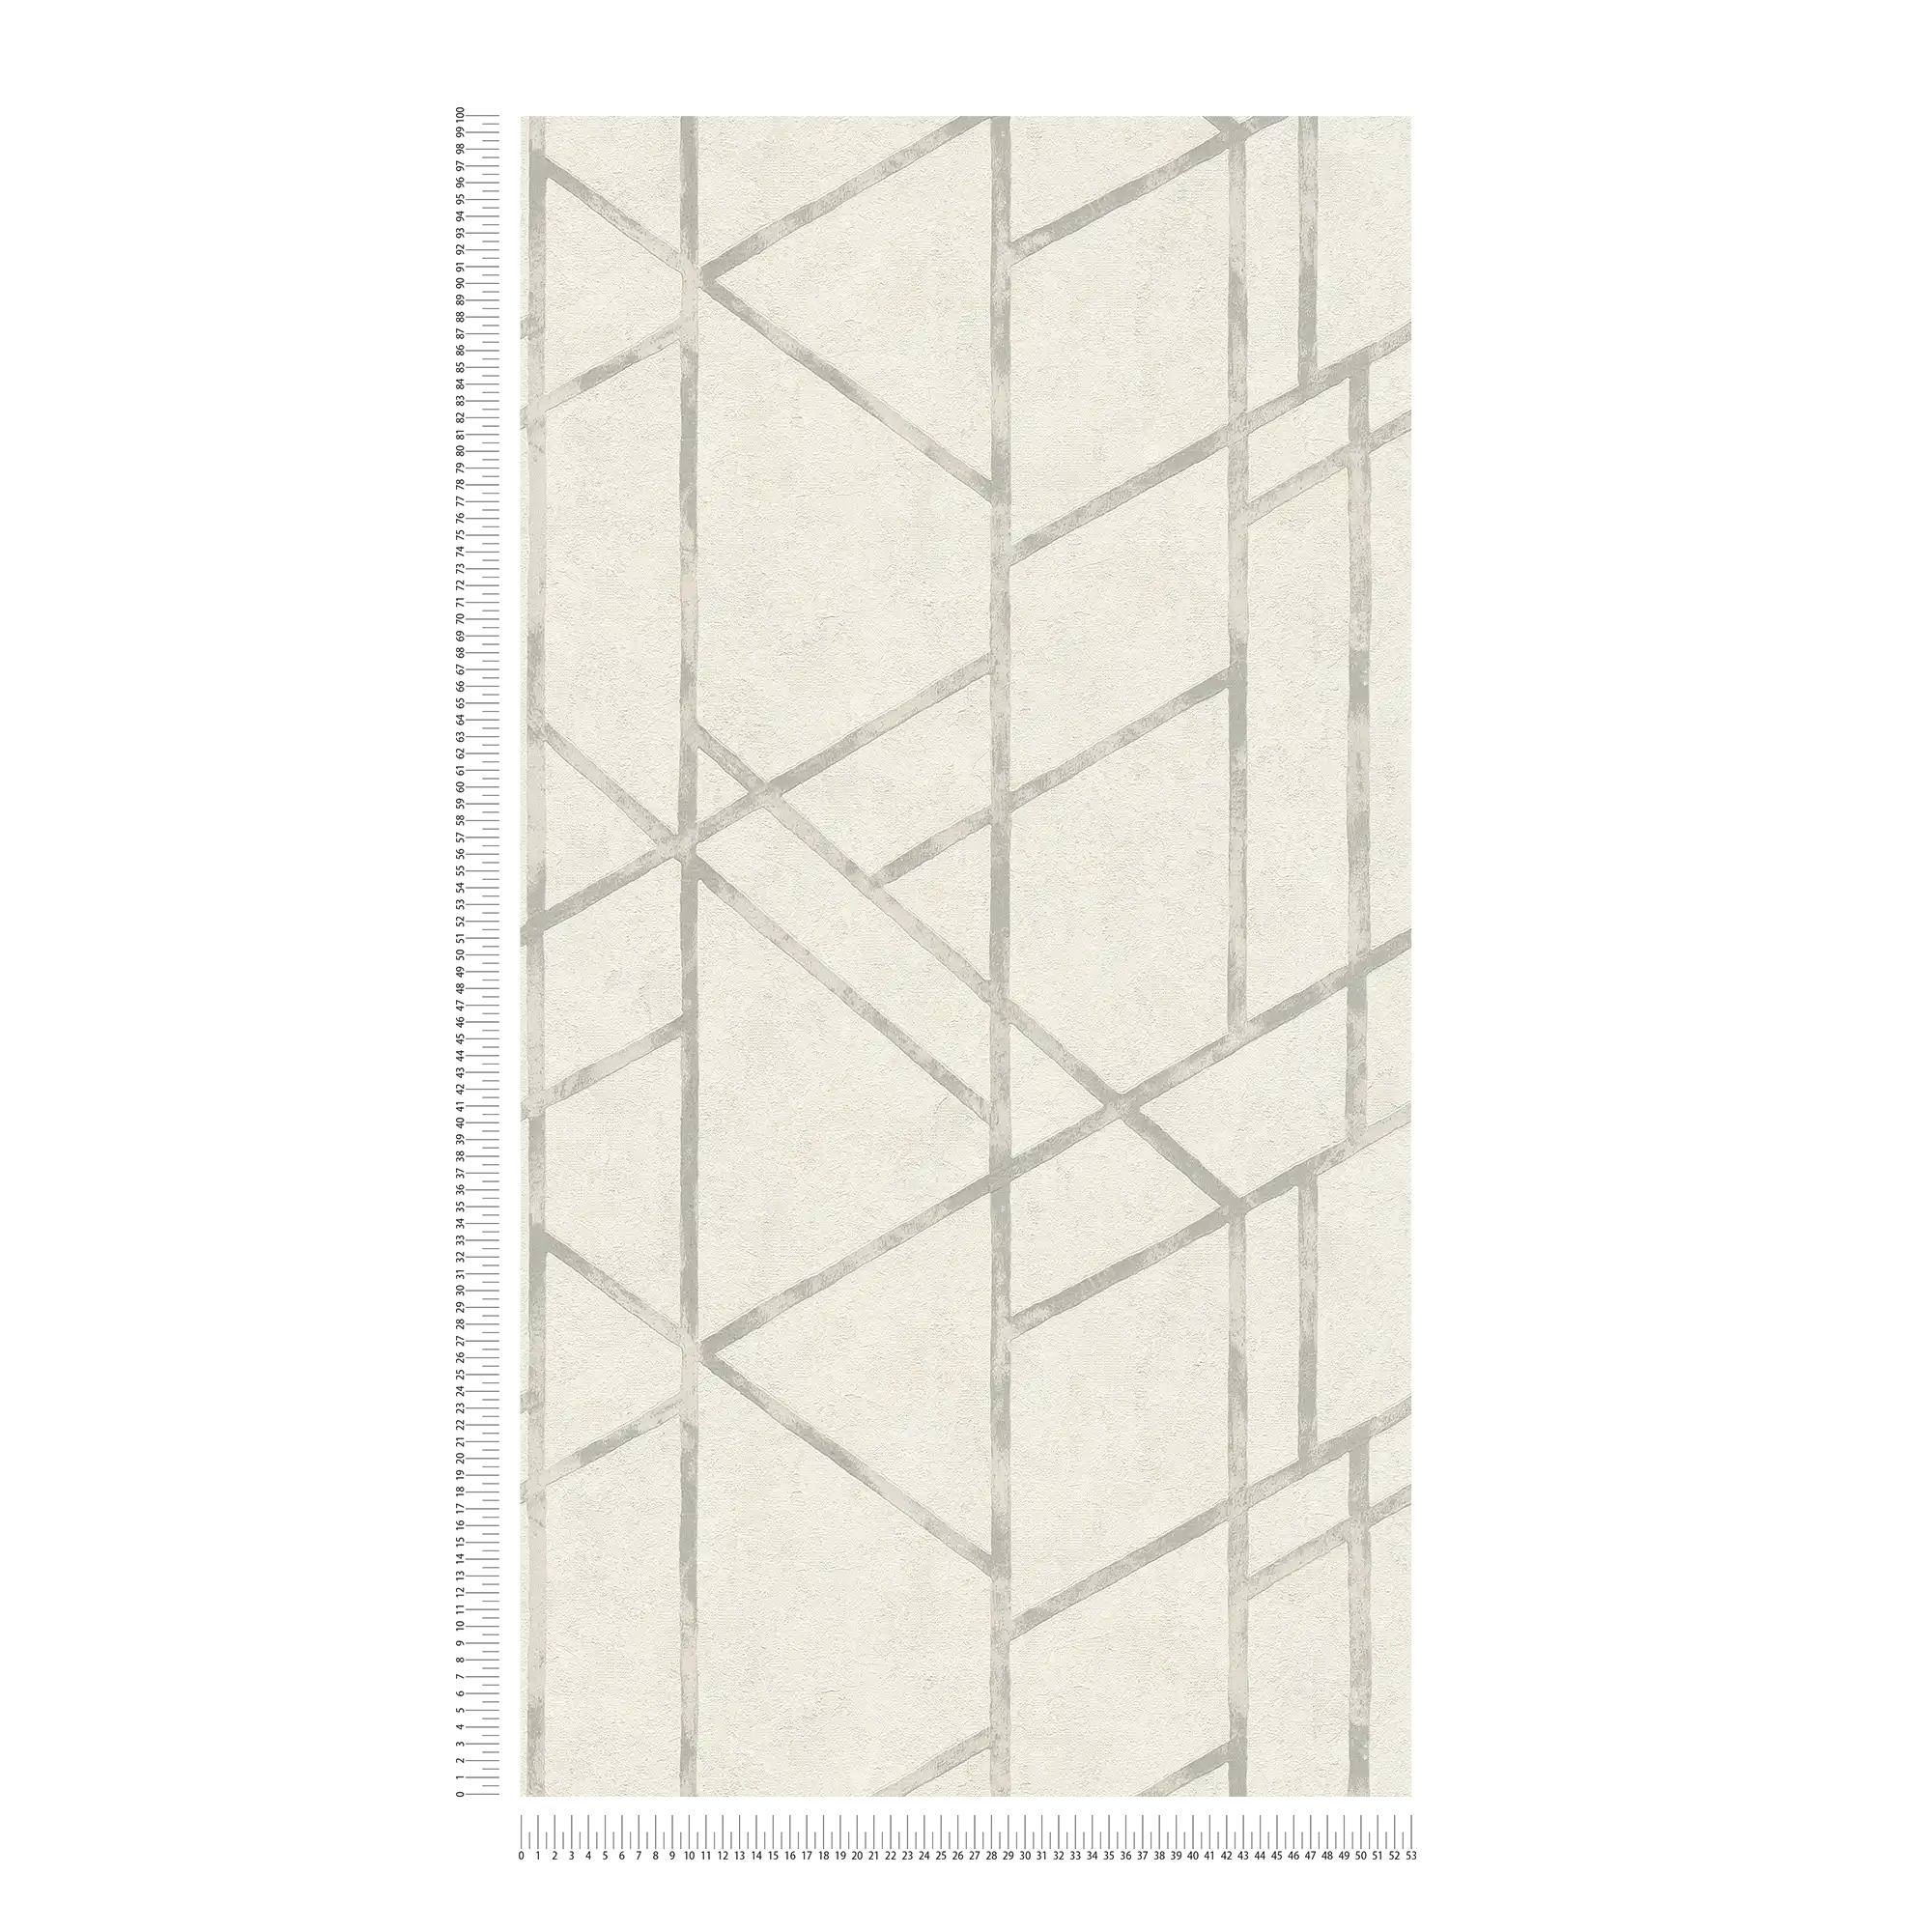             Betontapete mit silbernem Grafikmuster – Silber, Weiß
        